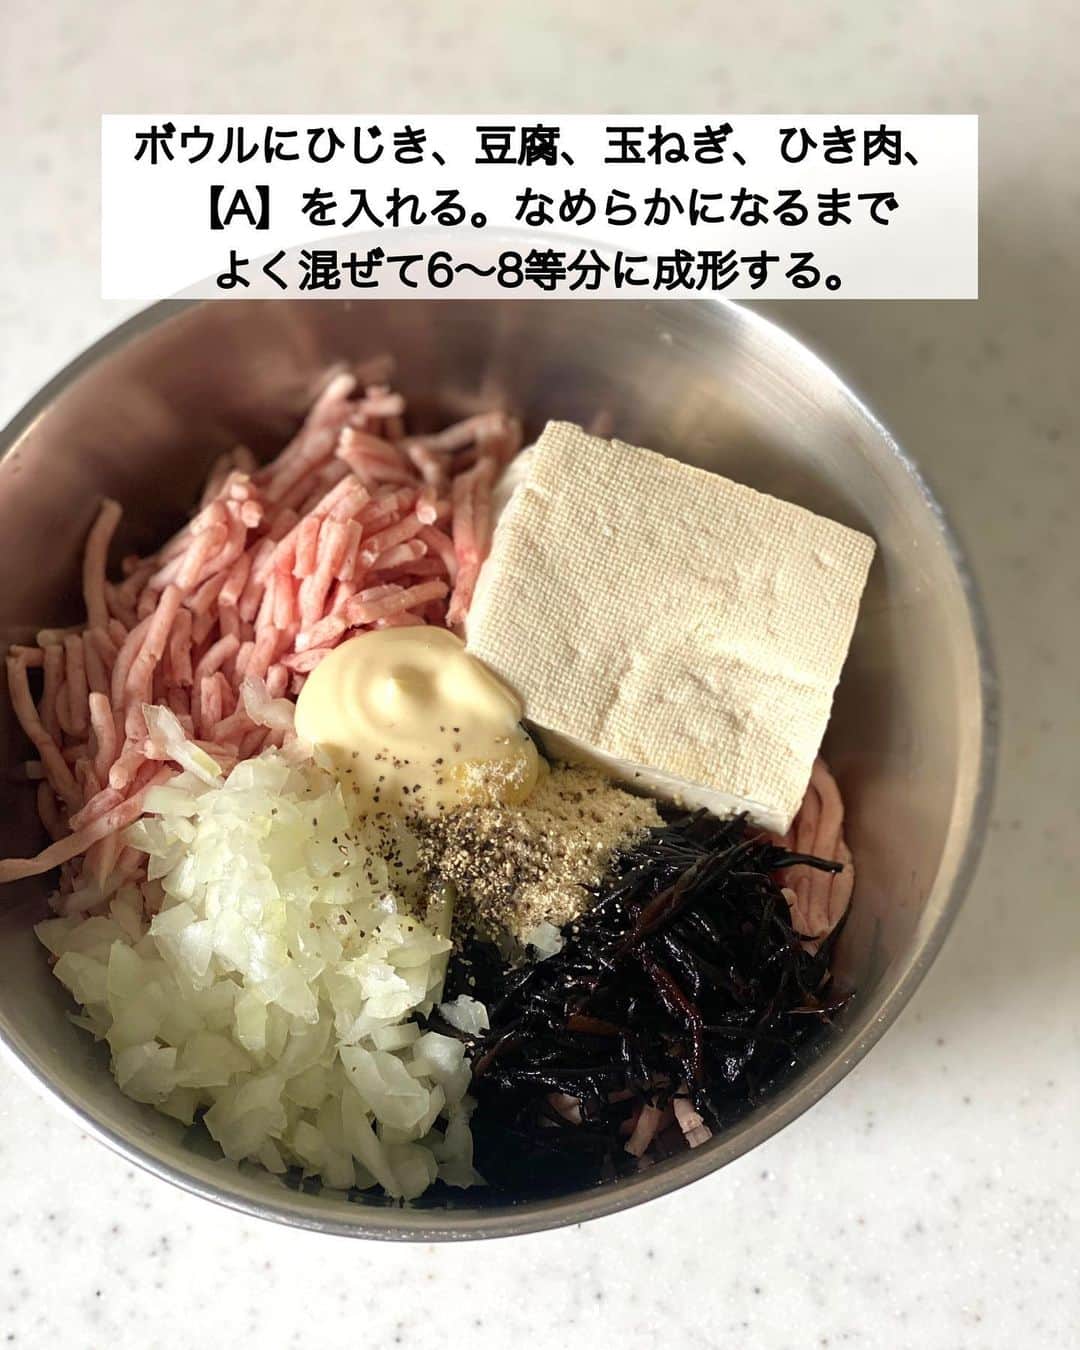 ちおりさんのインスタグラム写真 - (ちおりInstagram)「【ふんわりヘルシー✨】 ⁡ 他のレシピを見る→ @chiori.m.m をチェック✅ ⁡ ⁡ ━︎━︎━︎━︎━︎━︎━︎━︎━︎━︎━︎━︎━︎━︎━︎ ひじきの豆腐ハンバーグ ⁡ Nadiaレシピ🆔 460690 ━︎━︎━︎━︎━︎━︎━︎━︎━︎━︎━︎━︎━︎━︎━︎ ⁡ ⁡ ⁡ こんばんは(^ ^) ⁡ 今日は卵、パン粉不使用でも ふわっふわに焼ける 豆腐ハンバーグをご紹介させてください。 ひじき入りで栄養も◎ ⁡ 冷めても固くならず、柔らかいまま美味しいので 作り置きにやお弁当おかずにも最適です🍱 甘辛いソースをかけるとお子様が喜ぶ味つけに。 ⁡ ハンバーグ自体はほんのり味つきなので 薄味がお好みの方はそのまま食べても🙆🏻‍♀️ わたしはソース無しで柚子胡椒を少しのせて 食べるのが好きです（とっても合います👌🏻） ⁡ 良かったら作ってみてください😊 ⁡ ⁡ ________________________________________ ⁡ ⁡ ✍︎ ✍︎recipe ✍︎ ✍︎ ⁡ 👩‍🌾【材料】2〜3人分 •ひじき（乾燥）………大さじ1 •木綿豆腐…………………150g •玉ねぎ……………………1/4個 •豚ひき肉…………………300g •バター……………………10g A片栗粉……………………大さじ2 Aマヨネーズ ……………大さじ1 A鶏ガラスープの素……小さじ1 A粗挽き黒胡椒…………小さじ1/4 Bみりん……………………大さじ2 B酒、しょうゆ、水……各大さじ1 B砂糖、にんにくチューブ……各小さじ1/2 ⁡ ⁡ ________________________________________ ⁡ ⁡ ⁡ 👩‍🍳【作り方】 ① ひじきは水で戻し水気を切る。豆腐は重ねたペーパータオルで包み、両手でかるくおさえて水気を切る。玉ねぎはみじん切りにする。 ⁡ ②ボウルにひじき、豆腐、玉ねぎ、ひき肉、【A】を入れる。なめらかになるまでよく混ぜて6〜8等分に成形する。 ⁡ ③フライパンにバターを熱し、肉だねを入れて中火で焼く。両面に焼き色がついたら弱火にして蓋をし4〜5分ほど焼き、取り出す。 ⁡ ④余分な油を少しだけのこして拭き取り、【B】を入れて中火で熱し、半分の量になるまで煮詰めてタレをつくる。 ⁡ ⑤器にハンバーグを盛り、④のタレをかけていただく。 ⁡ ⁡ ⁡ ________________________________________ ⁡ ⁡ ⁡ ⁡ 📝【POINT】 •タネは柔らかいので手に水をつけて成形するときれいにまとまります。 ⁡ •バターはマーガリンまたはサラダ油で代用OKです。 ⁡ •ひじき無しでもお作りいただけます。 ⁡ •日持ちは冷蔵で2〜3日。 ⁡ •冷凍保存可。冷凍する場合はなるべく豆腐の水分をしっかり切ってからお作りください。焼いたものはラップで1つずつ包み保存袋に入れて冷凍してください。 ⁡ ⁡ ⁡ ⁡ ≡︎≡︎≡︎≡︎≡︎≡︎≡︎≡︎≡︎≡︎≡︎≡︎≡︎≡︎≡︎≡︎≡︎≡︎≡︎≡︎≡︎≡︎≡︎≡︎≡︎≡︎≡︎≡︎≡︎≡︎≡︎≡︎≡︎≡︎ 【✅新刊レシピ本のお知らせ】 📕ちおり流くり返し作りたいおかず 🙇🏻‍♀️おかげ様で書籍累計10万部を突破しました。 ⁡ ⁡ 全国の書店、Amazon、楽天ブックス 宝島チャンネルにて発売中です。 ⁡ ➤ ➤ ➤ @chiori.m.m のストーリーハイライト。 プロフィールのリンクからご覧いただけます😊 📗ちおりの簡単絶品おかず１、２ 既刊もぜひご覧いただきたいです。 ⁡ ≡︎≡︎≡︎≡︎≡︎≡︎≡︎≡︎≡︎≡︎≡︎≡︎≡︎≡︎≡︎≡︎≡︎≡︎≡︎≡︎≡︎≡︎≡︎≡︎≡︎≡︎≡︎≡︎≡︎≡︎≡︎≡︎≡︎≡︎ ⁡ ⁡ ⁡ 最後までご覧いただきありがとうございます☺️ ⁑ ⁑ ⁑ ⁑ ⁑ ⁑ ⁑ ⁑ #豆腐ハンバーグ #豆腐レシピ   #Nadiaレシピ #Nadiaartist  #japanesefood   #食卓 #献立 #簡単ごはん #作り置き  #簡単レシピ #節約レシピ #時短レシピ  #日々の暮らし #作り置きレシピ #ひじき   #夕飯レシピ #お弁当レシピ #基本のレシピ  #料理初心者 #おつまみレシピ #ひじきレシピ  #ハンバーグレシピ #レシピ #豚ひき肉  #料理レシピ #ひき肉 #ひき肉レシピ」5月16日 20時39分 - chiori.m.m